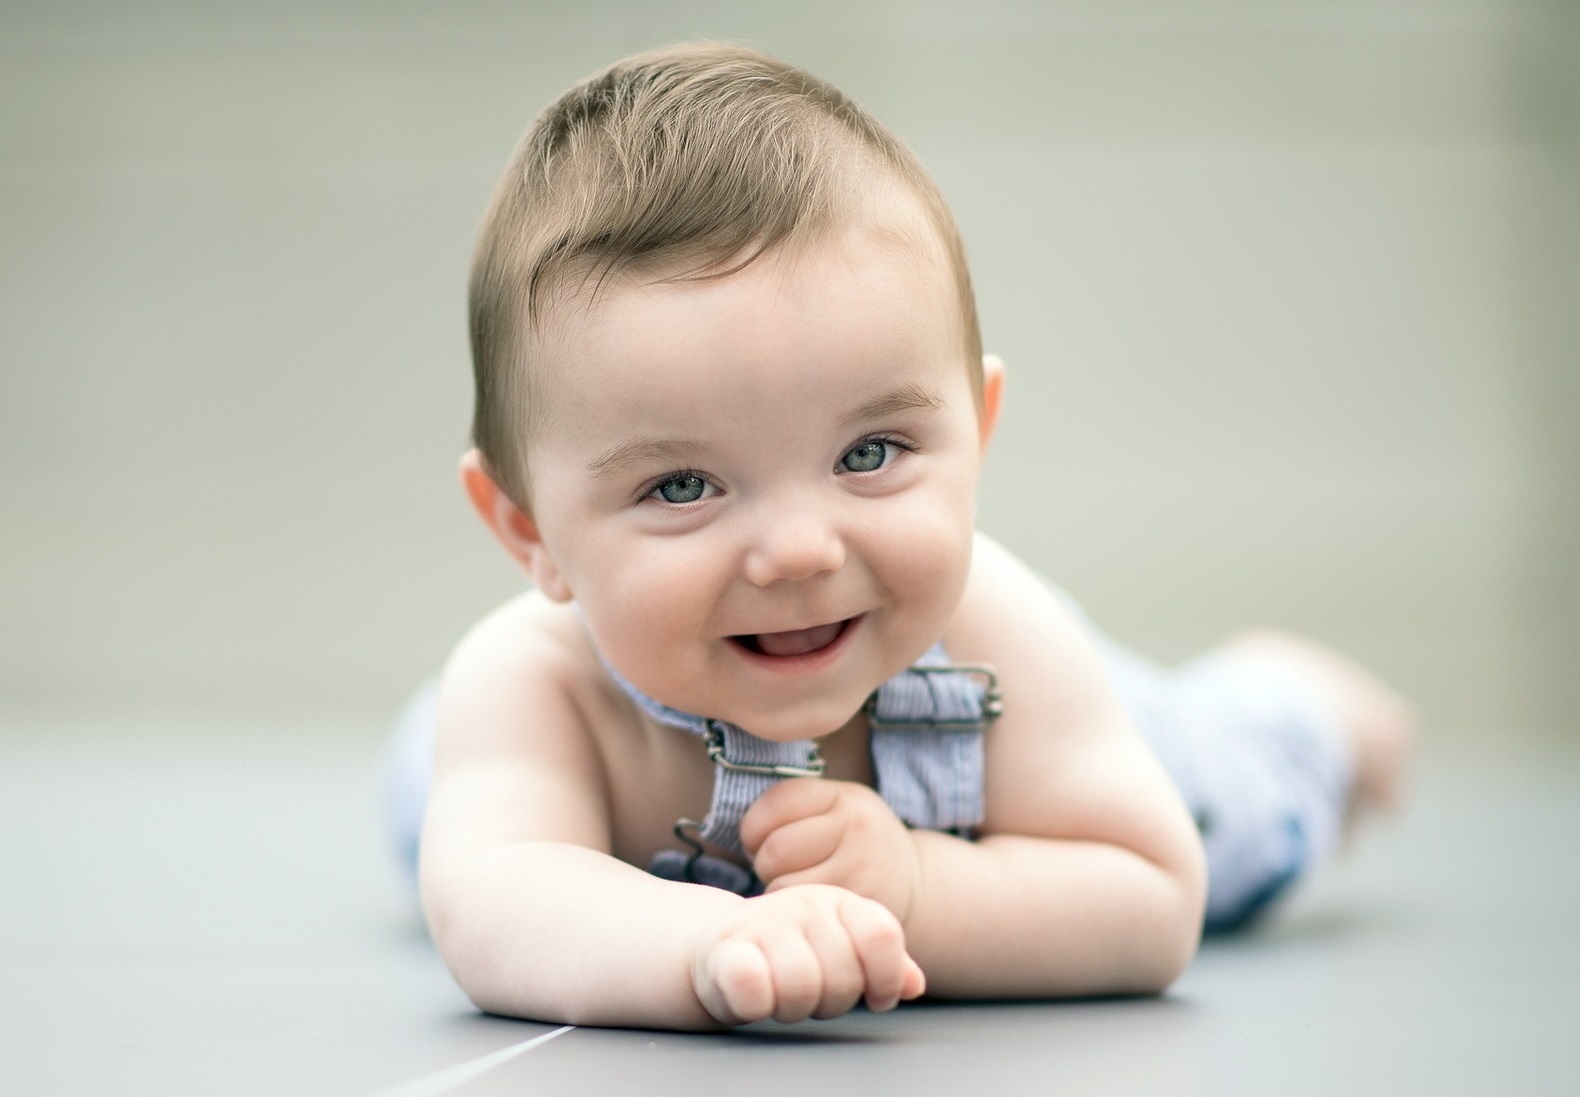 Sưu tầm] 901+ hình ảnh em bé trai dễ thương, cute nhất thế giới